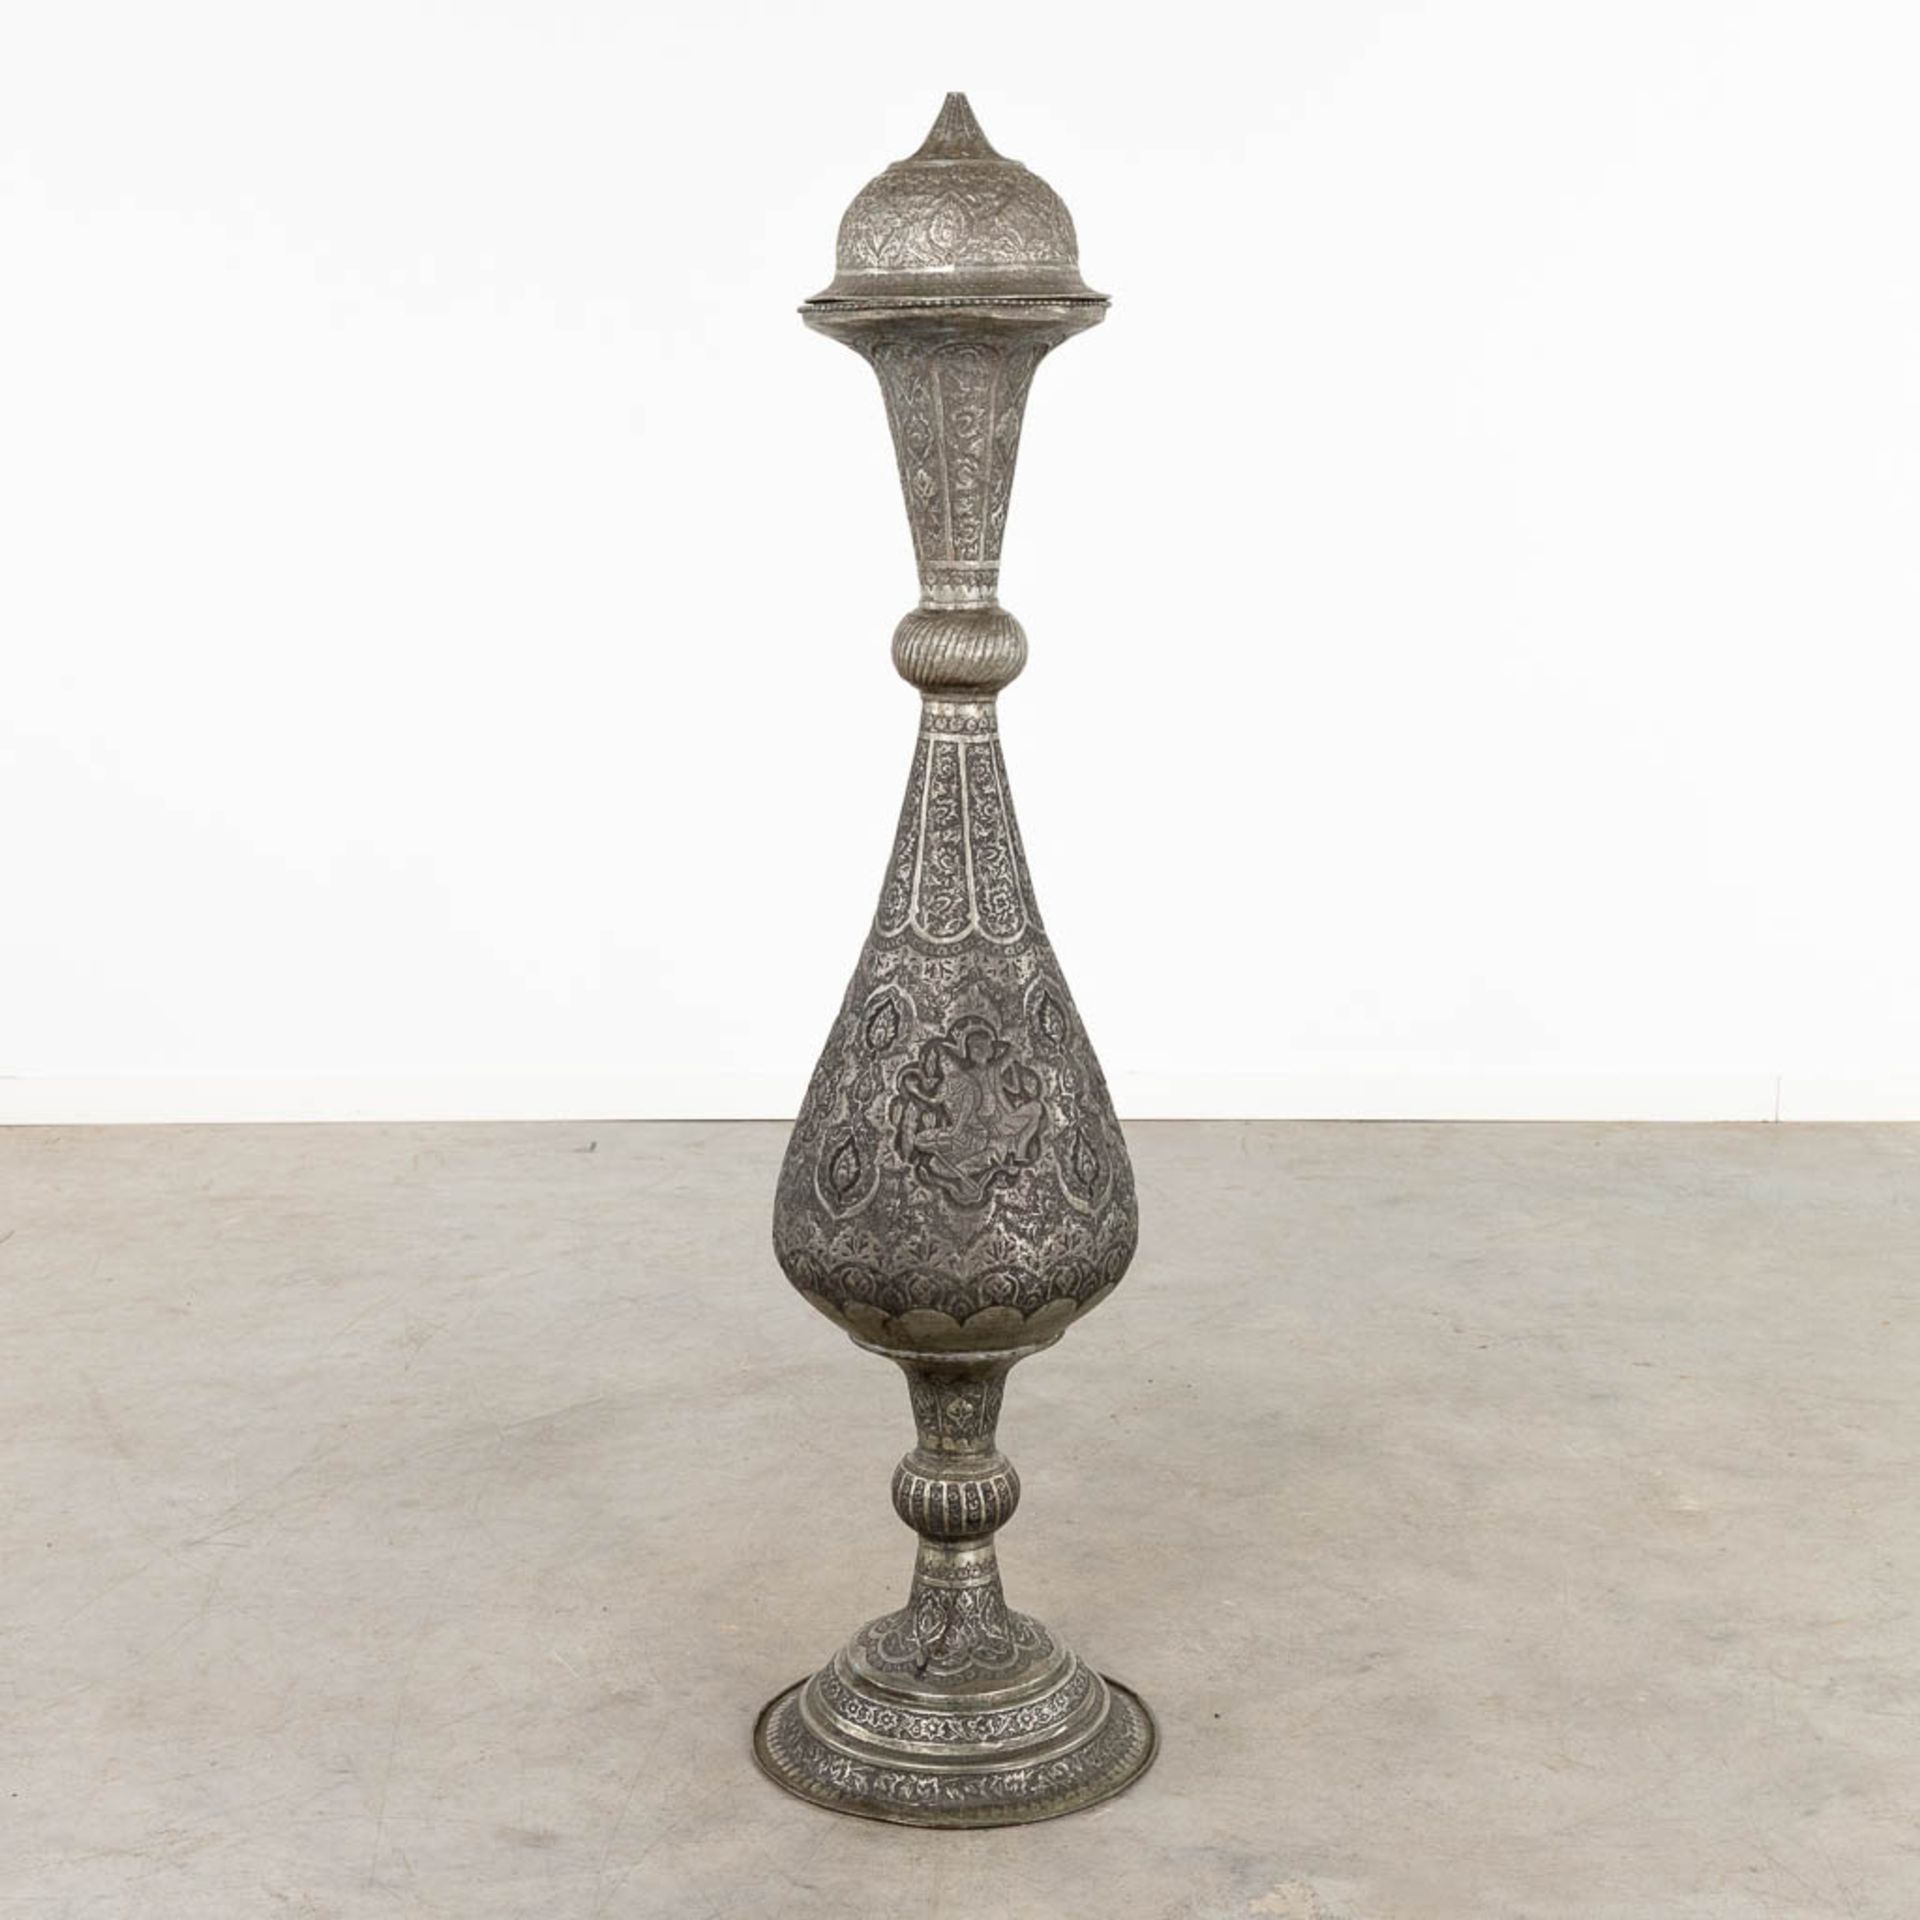 A large decorative vase, India. 19th C. (H:128 x D:32 cm)